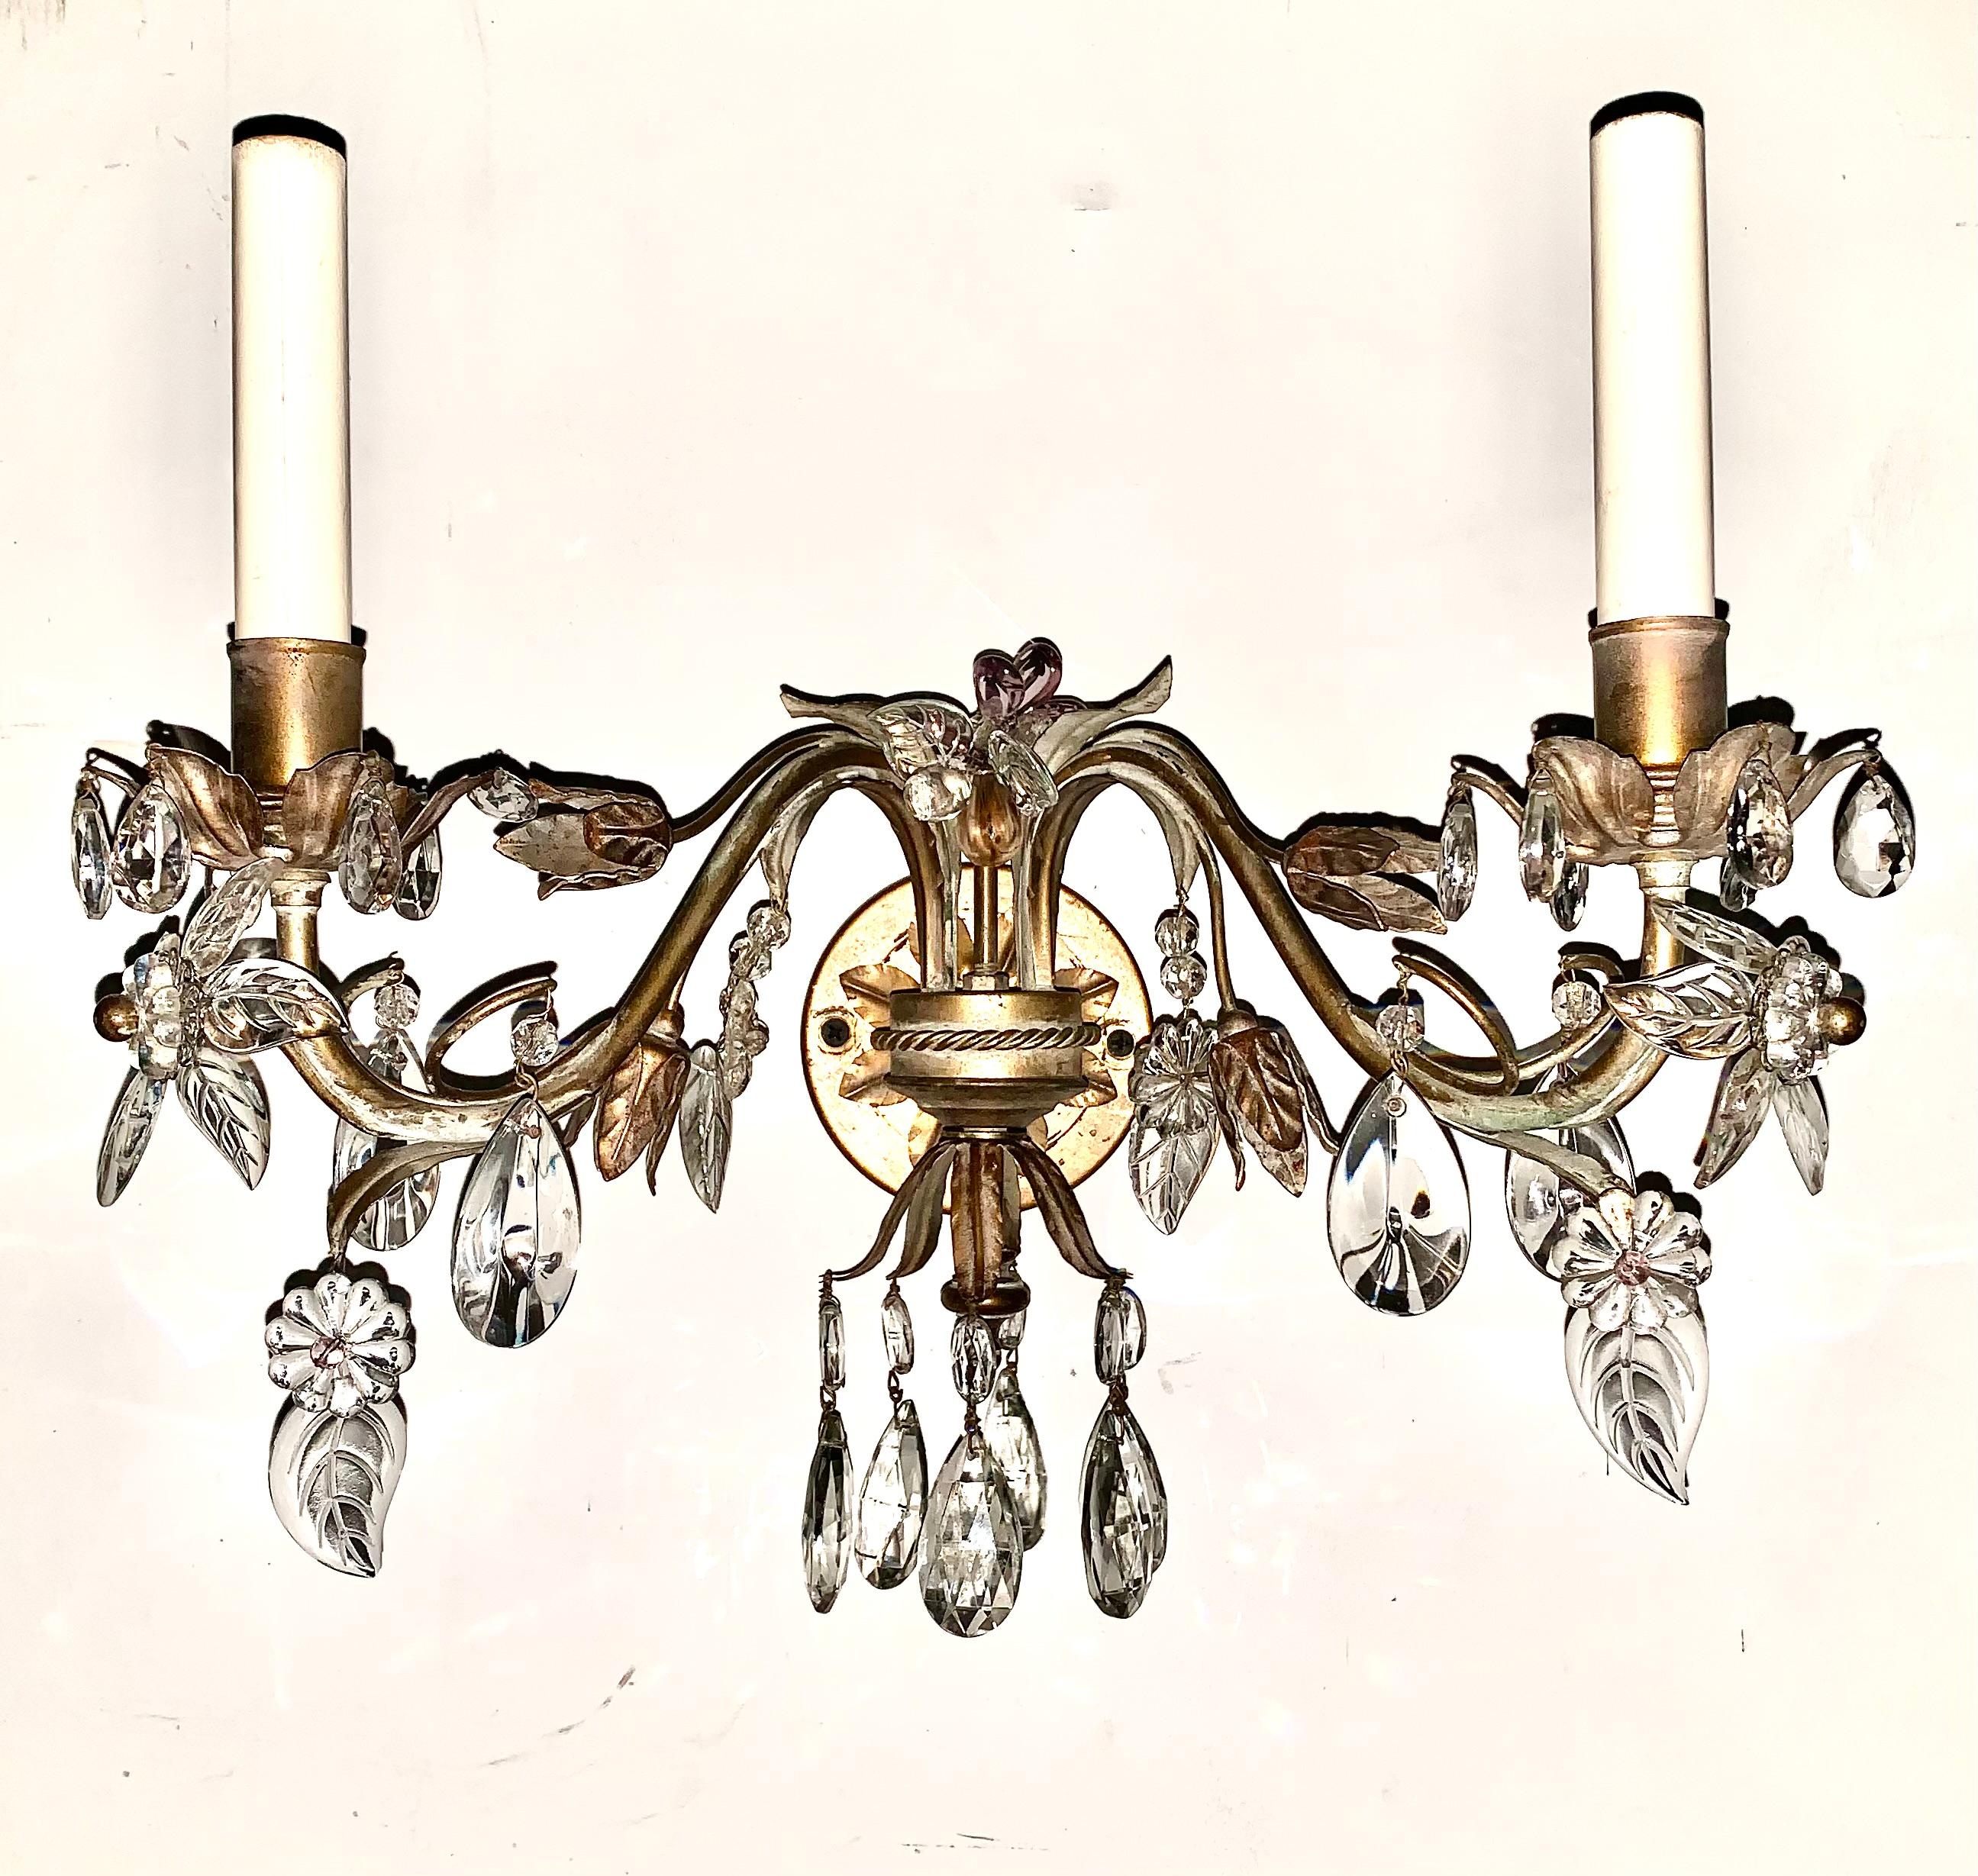 Paire d'appliques à deux lumières en verre améthyste et métal doré cristal, de style Maison Bagues, à motif de fleurs et de feuilles
20ème siècle
Appliques françaises de haute qualité, magnifiquement détaillées, composées d'éléments floraux et